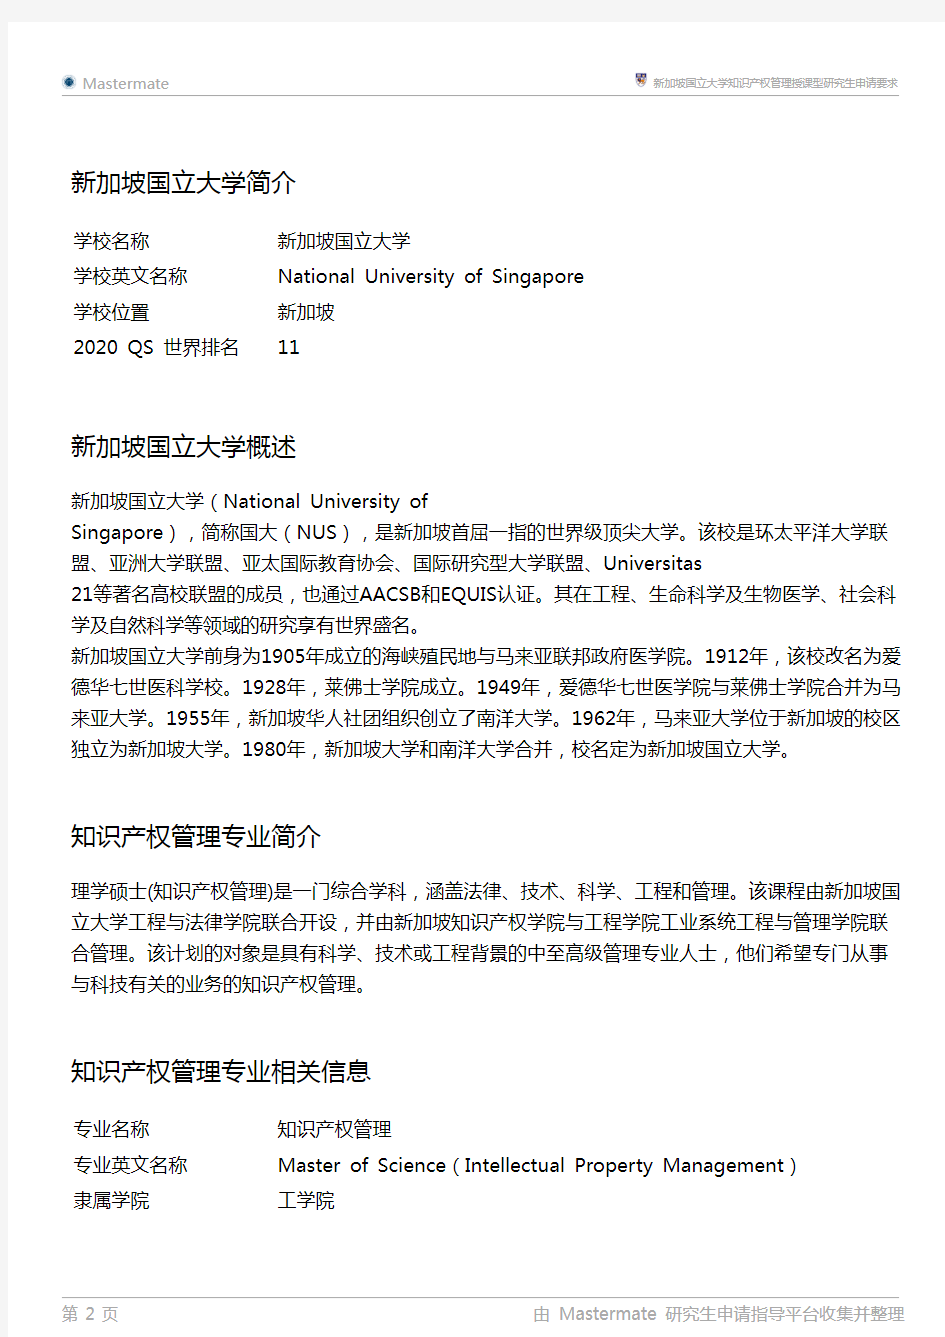 新加坡国立大学知识产权管理授课型研究生申请要求